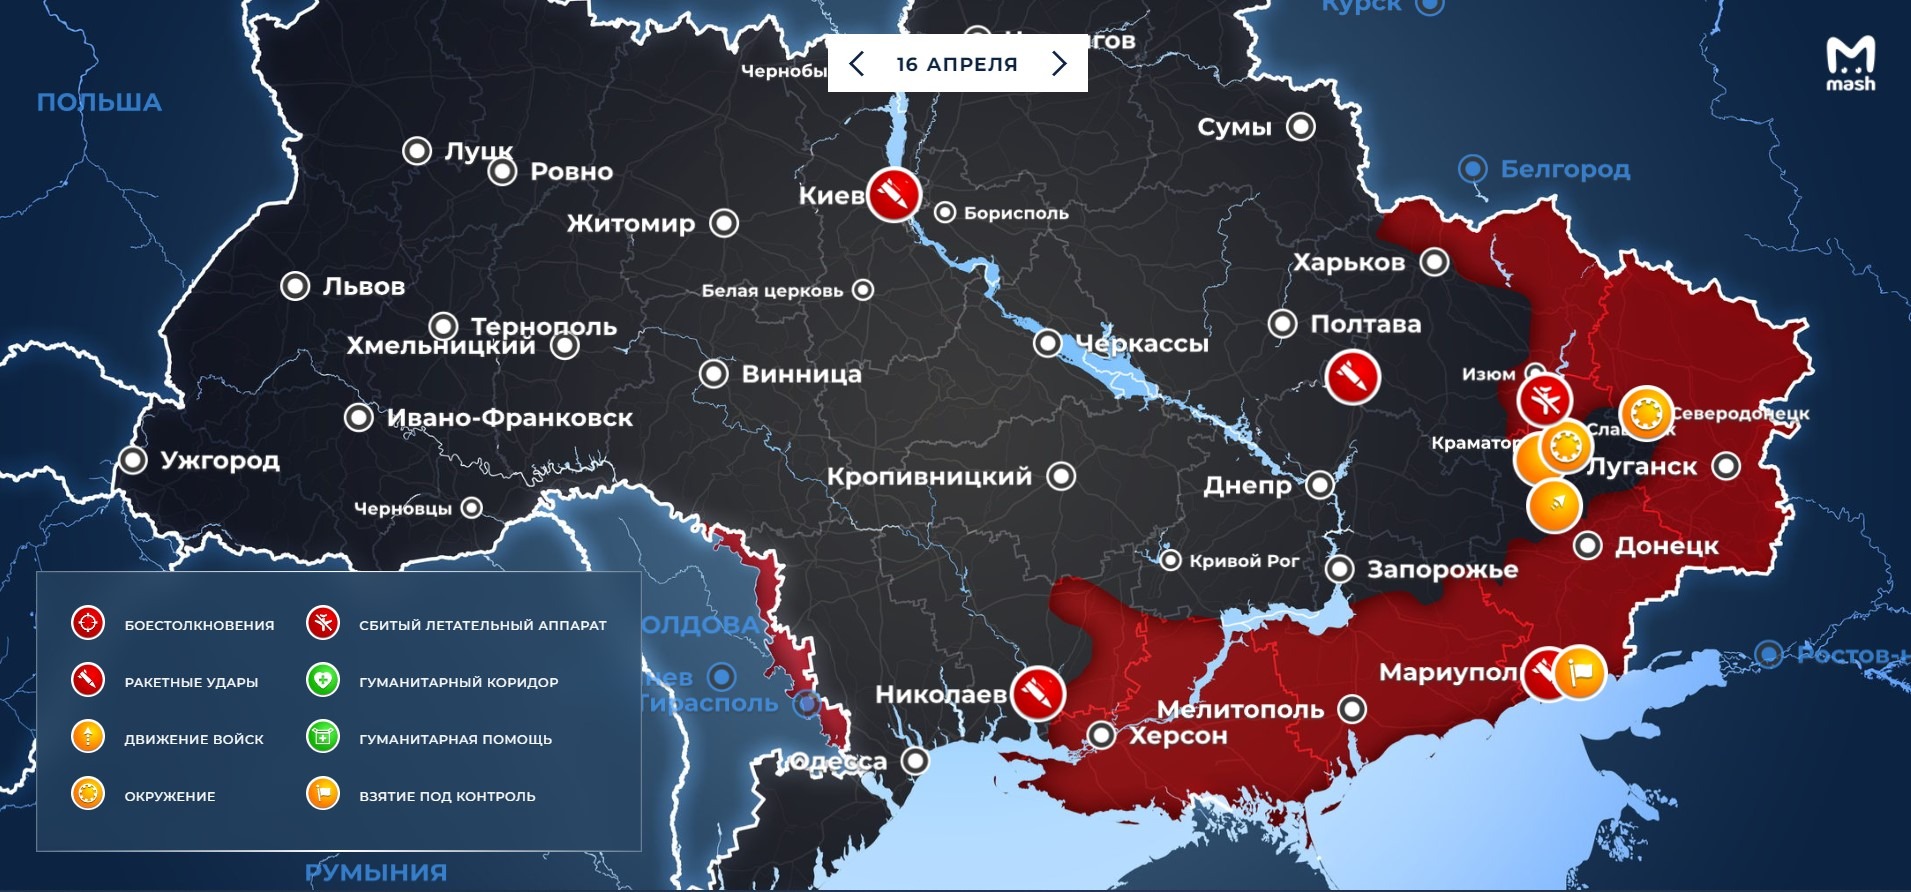 Карта боевых действий на Украине на 30 марта 2022